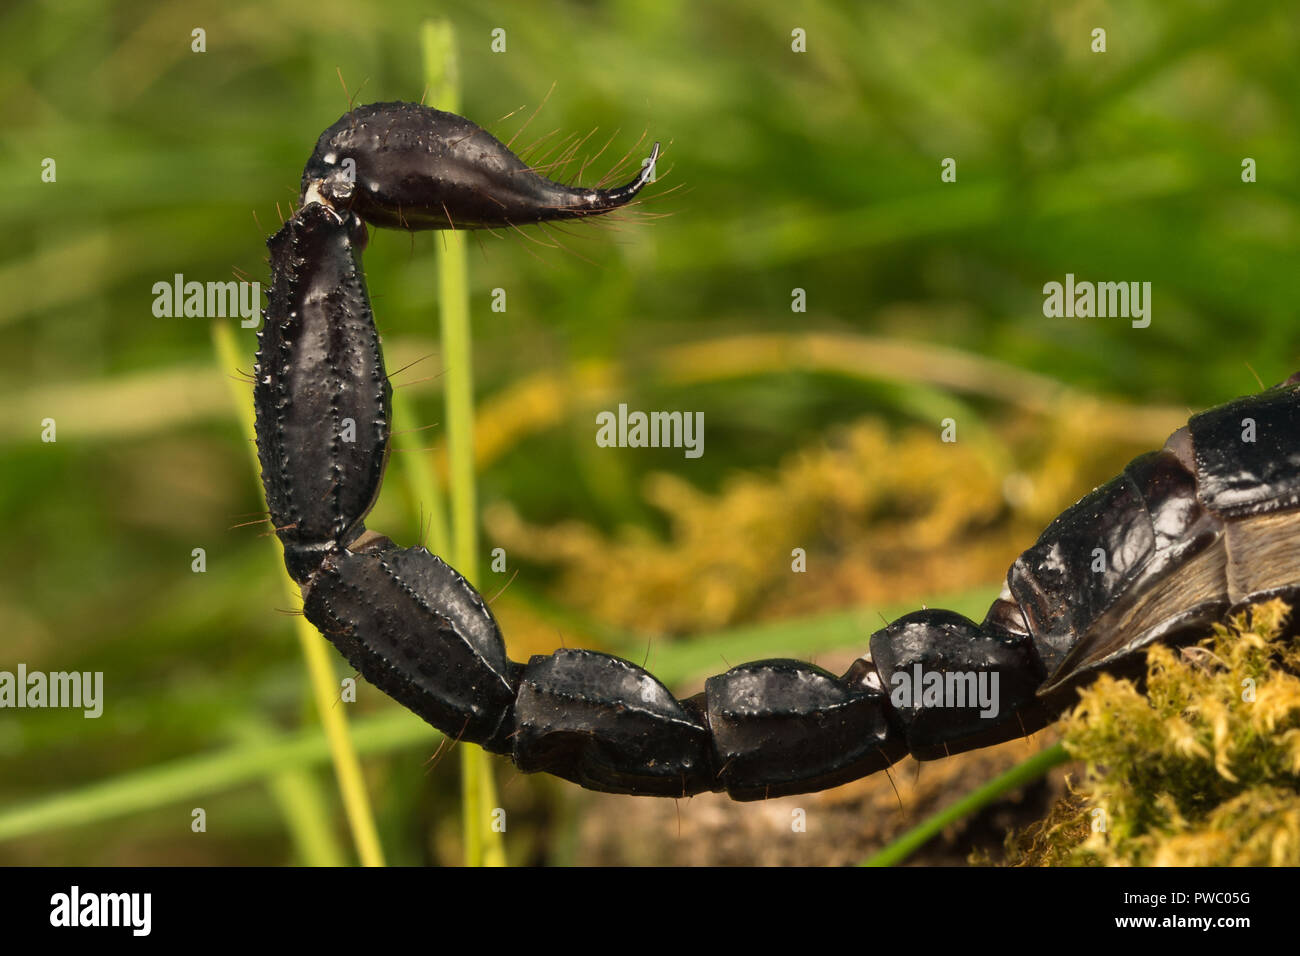 Scorpion Pandinus imperator (empereur), une espèce de scorpion originaire d'Afrique de l'Ouest - gros plan de la queue courbée avec un aiguillon venimeux Banque D'Images